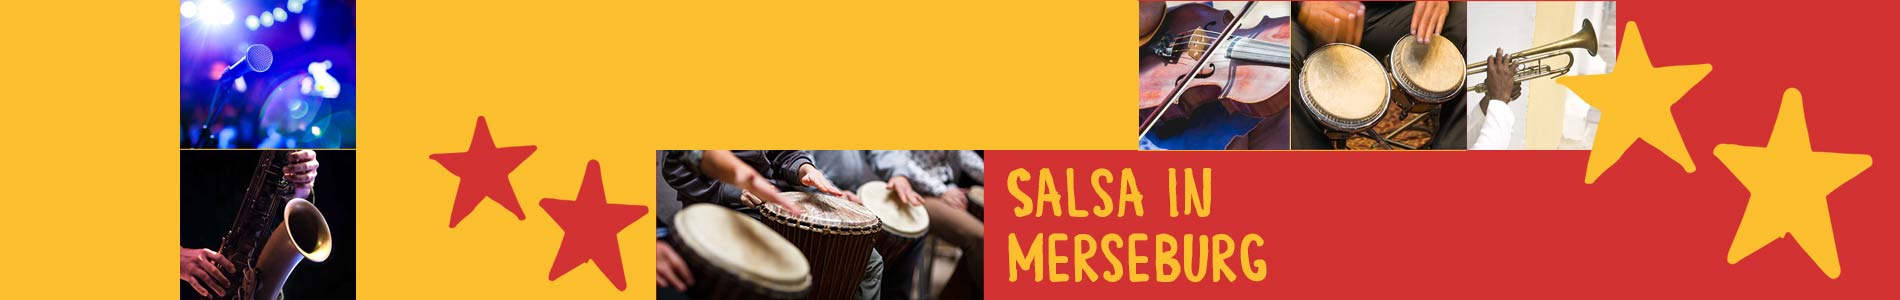 Salsa in Merseburg – Salsa lernen und tanzen, Tanzkurse, Partys, Veranstaltungen